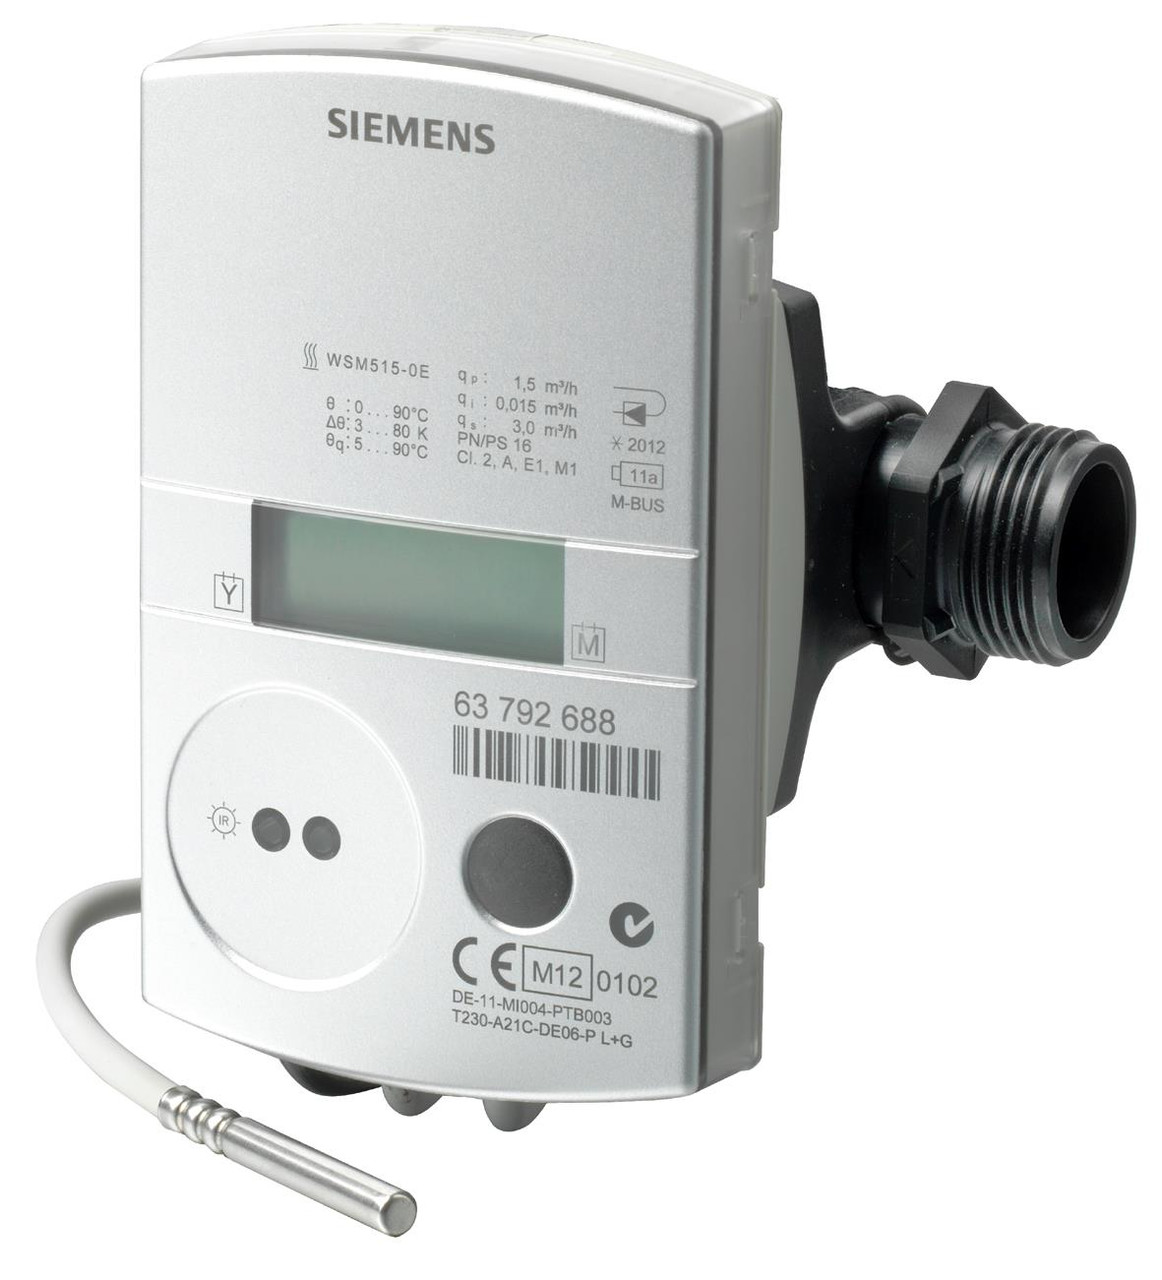 Siemens WSN525-FE, S55561-F283